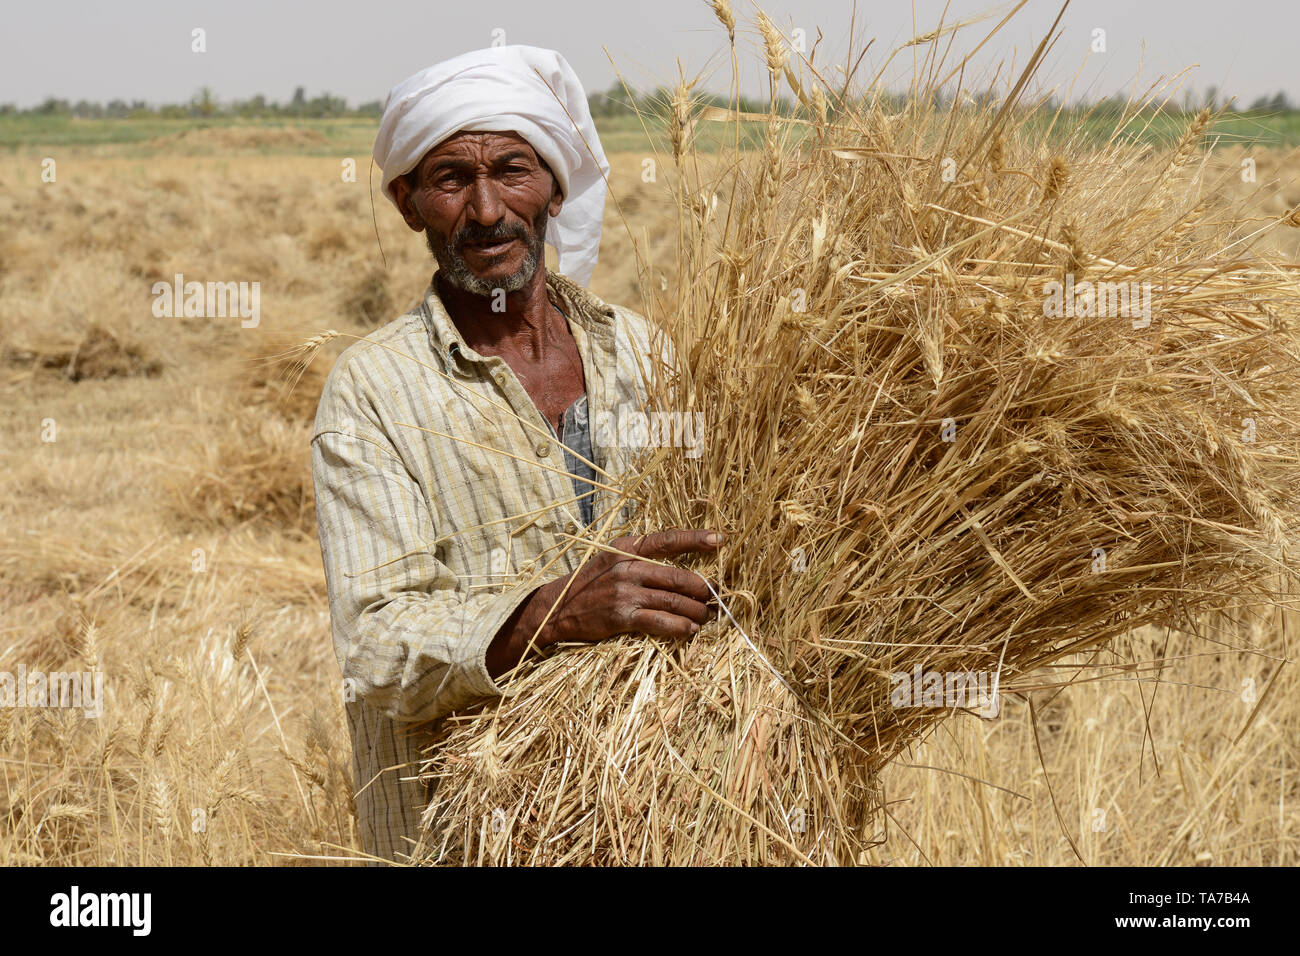 Ägypten, Oase Farafra, Wüste, Landwirtschaft, kleine Bauern ernten Weizen/AEGYPTEN, Oase Farafra, Landwirtschaft in der Wueste, Ernte von Weizen Stockfoto